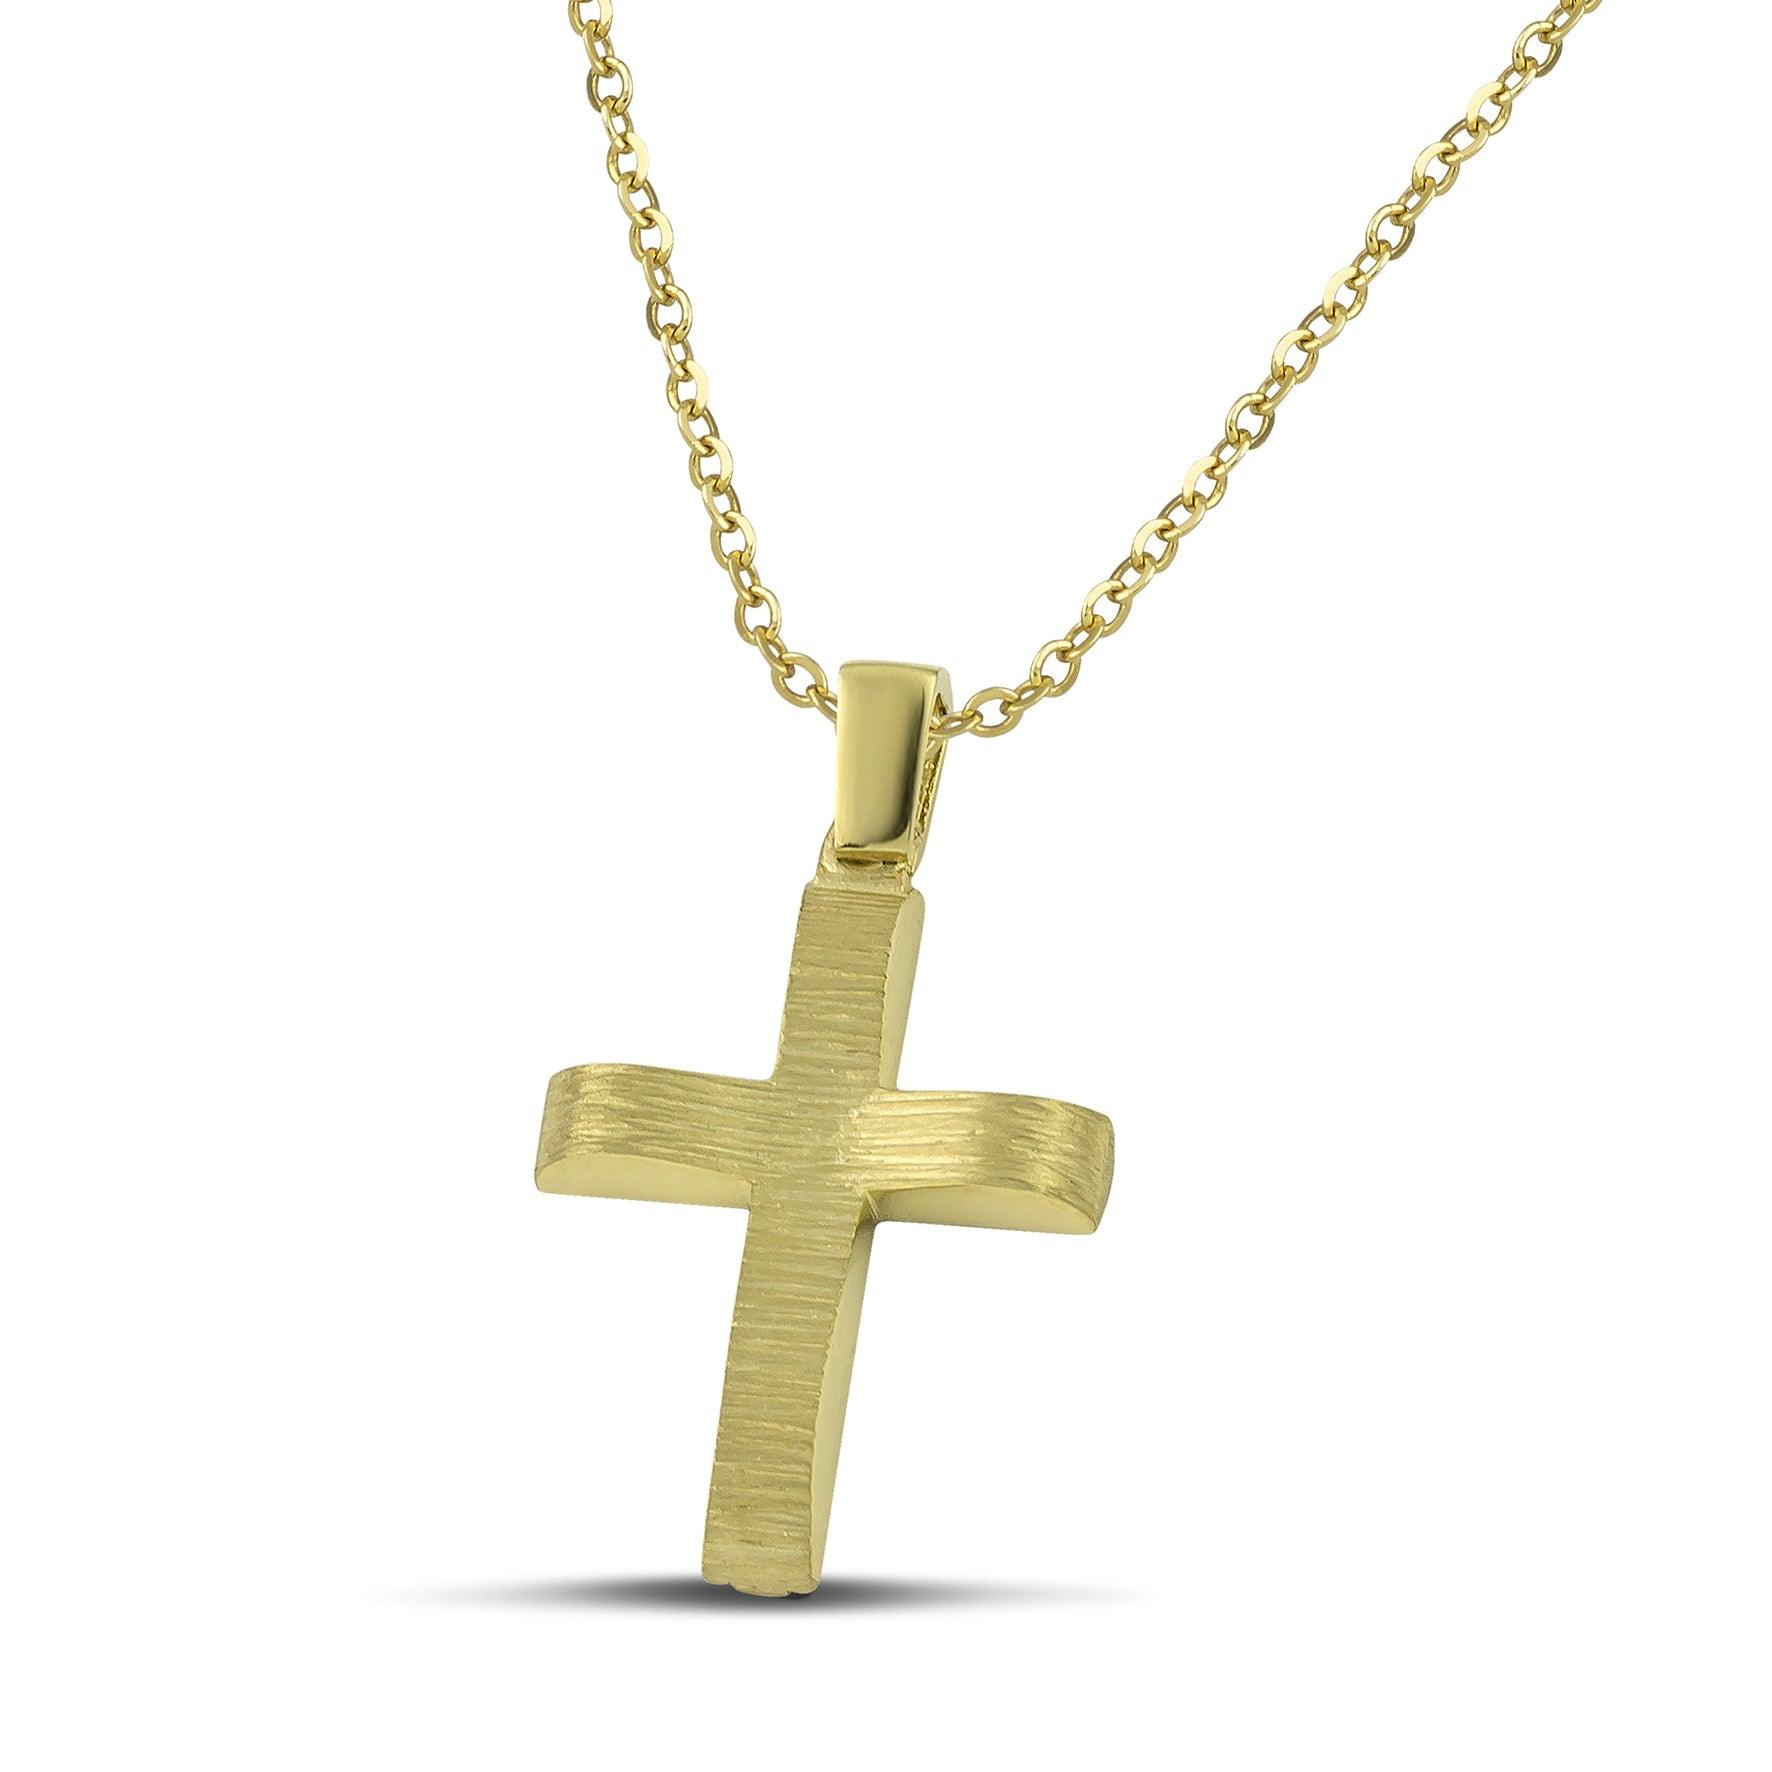 Μοντέρνος βαπτιστικός σταυρός χρυσός Κ14 για αγόρι, διπλής όψης, σαγρέ, σε λεπτή αλυσίδα. 